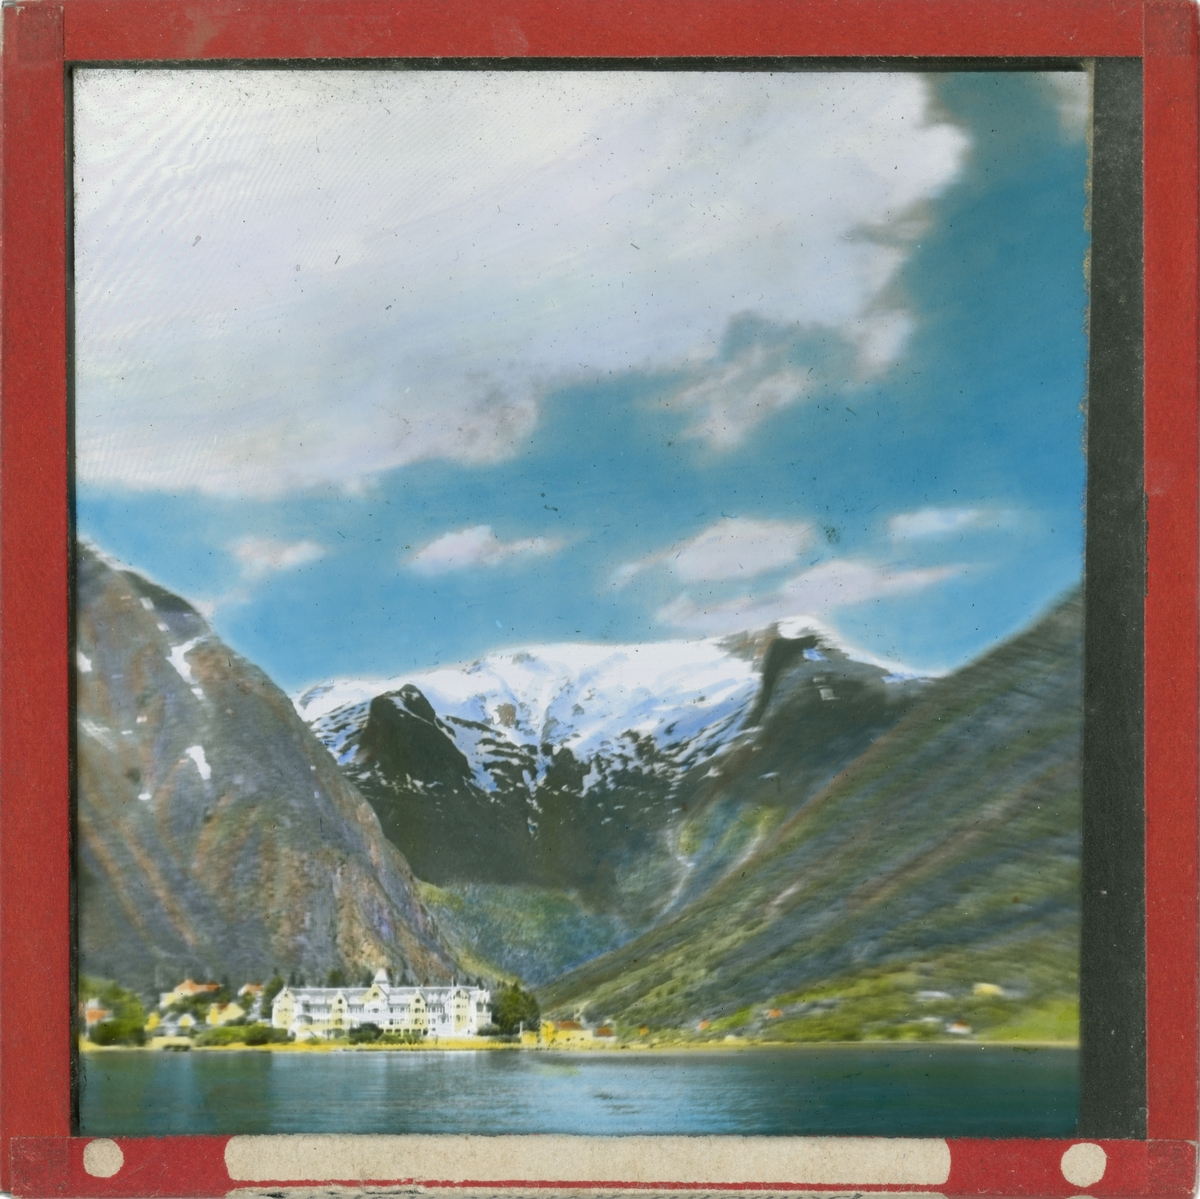 Håndkolorert lysbilde. Bilde av Kviknes hotell i grønt landskap. I bakgrunnen ses fjell med snø.